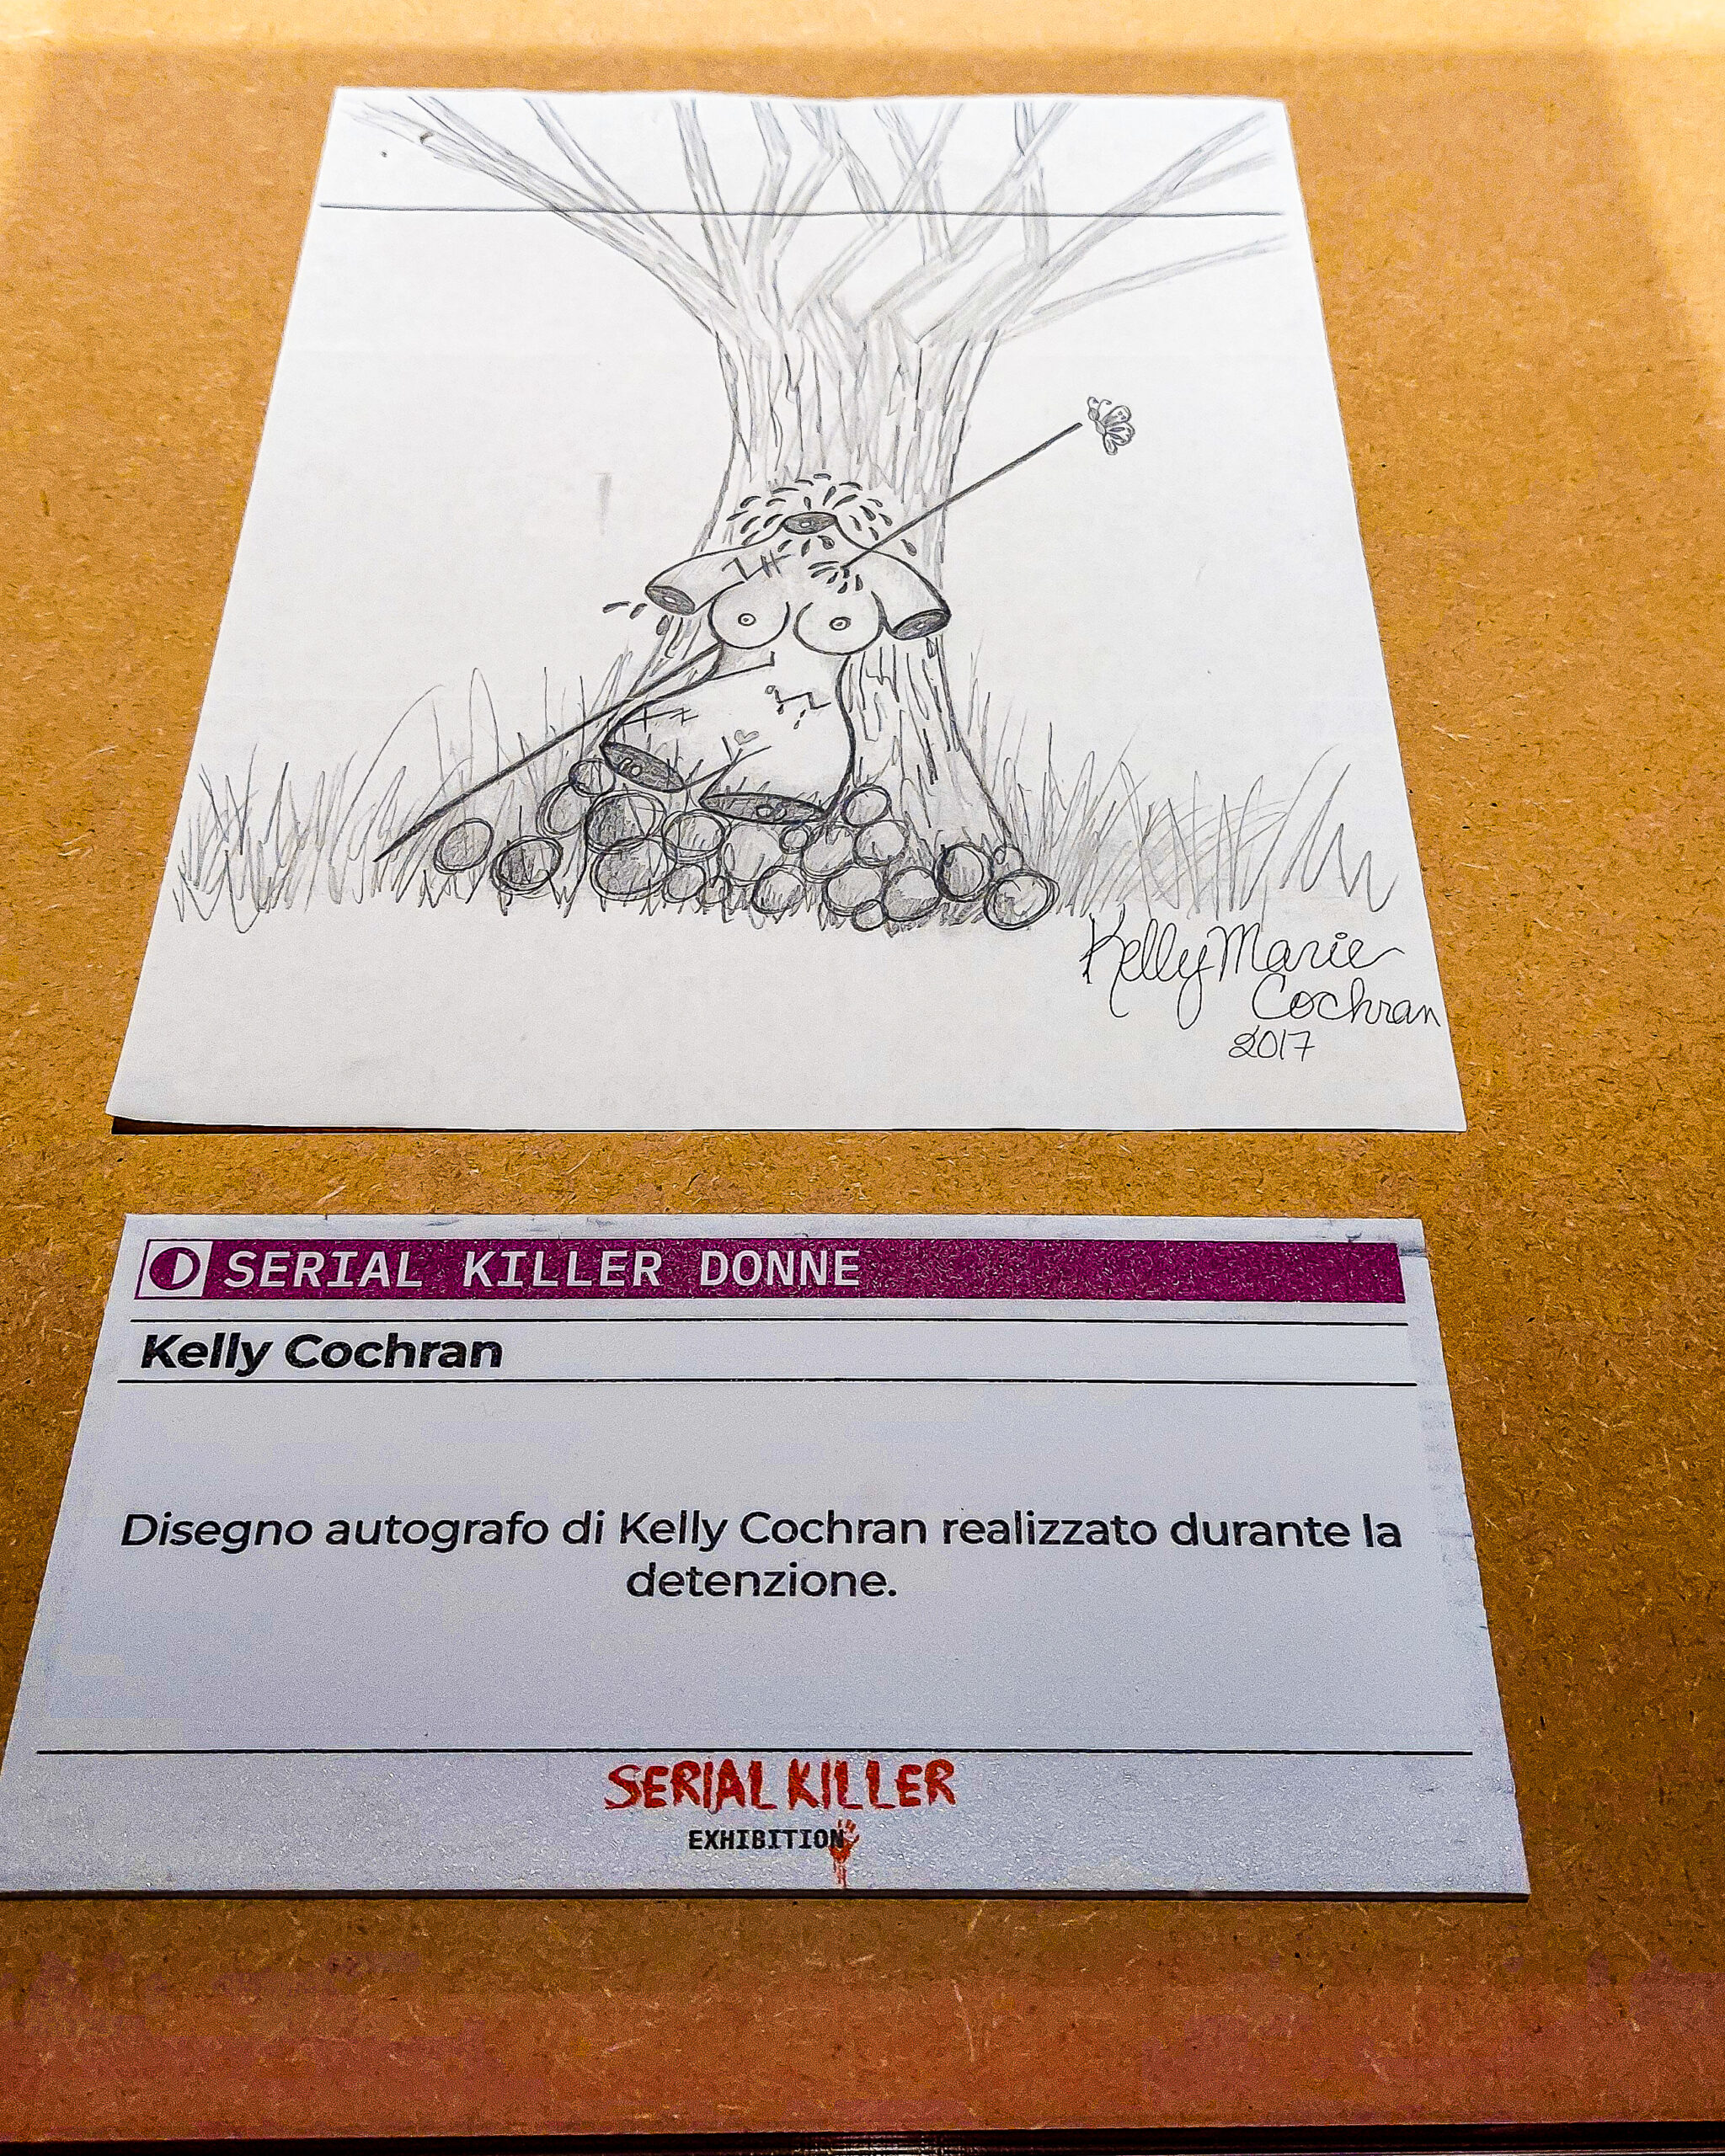 Disegno autografo di Kelly Cochran presso “Serial Killer Exhibition” Milano 2023